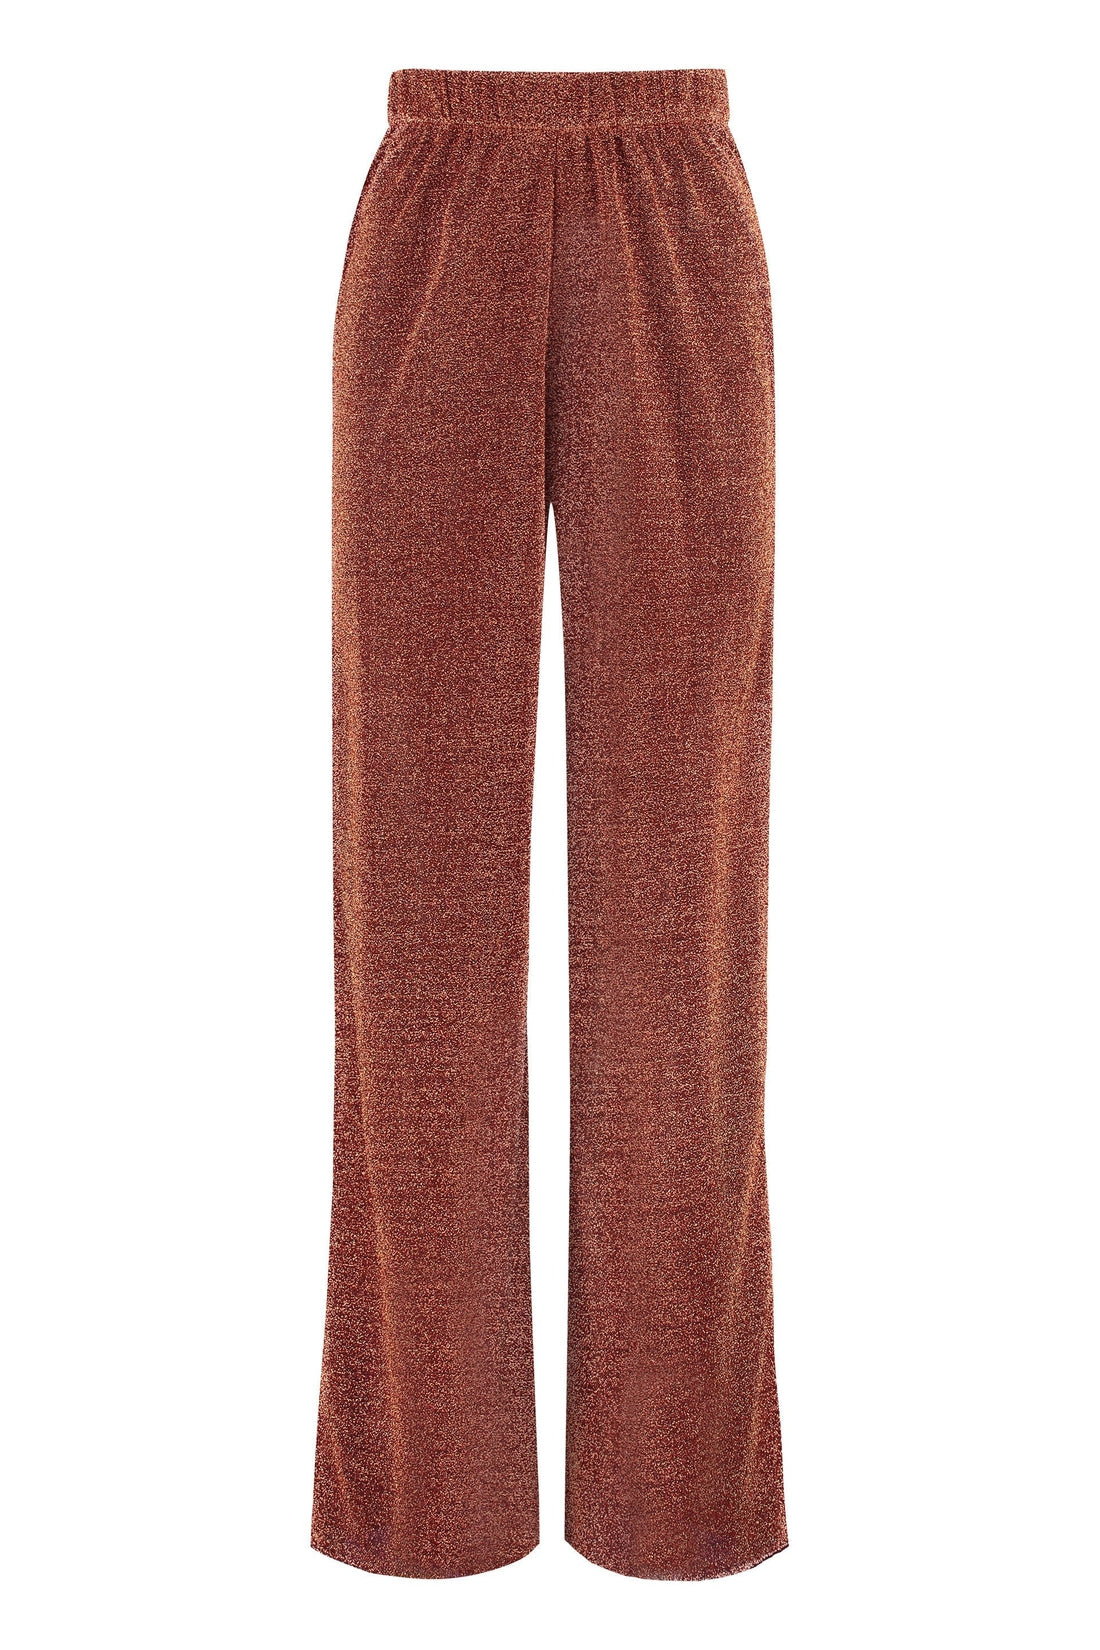 Oséree-OUTLET-SALE-Jersey trousers-ARCHIVIST